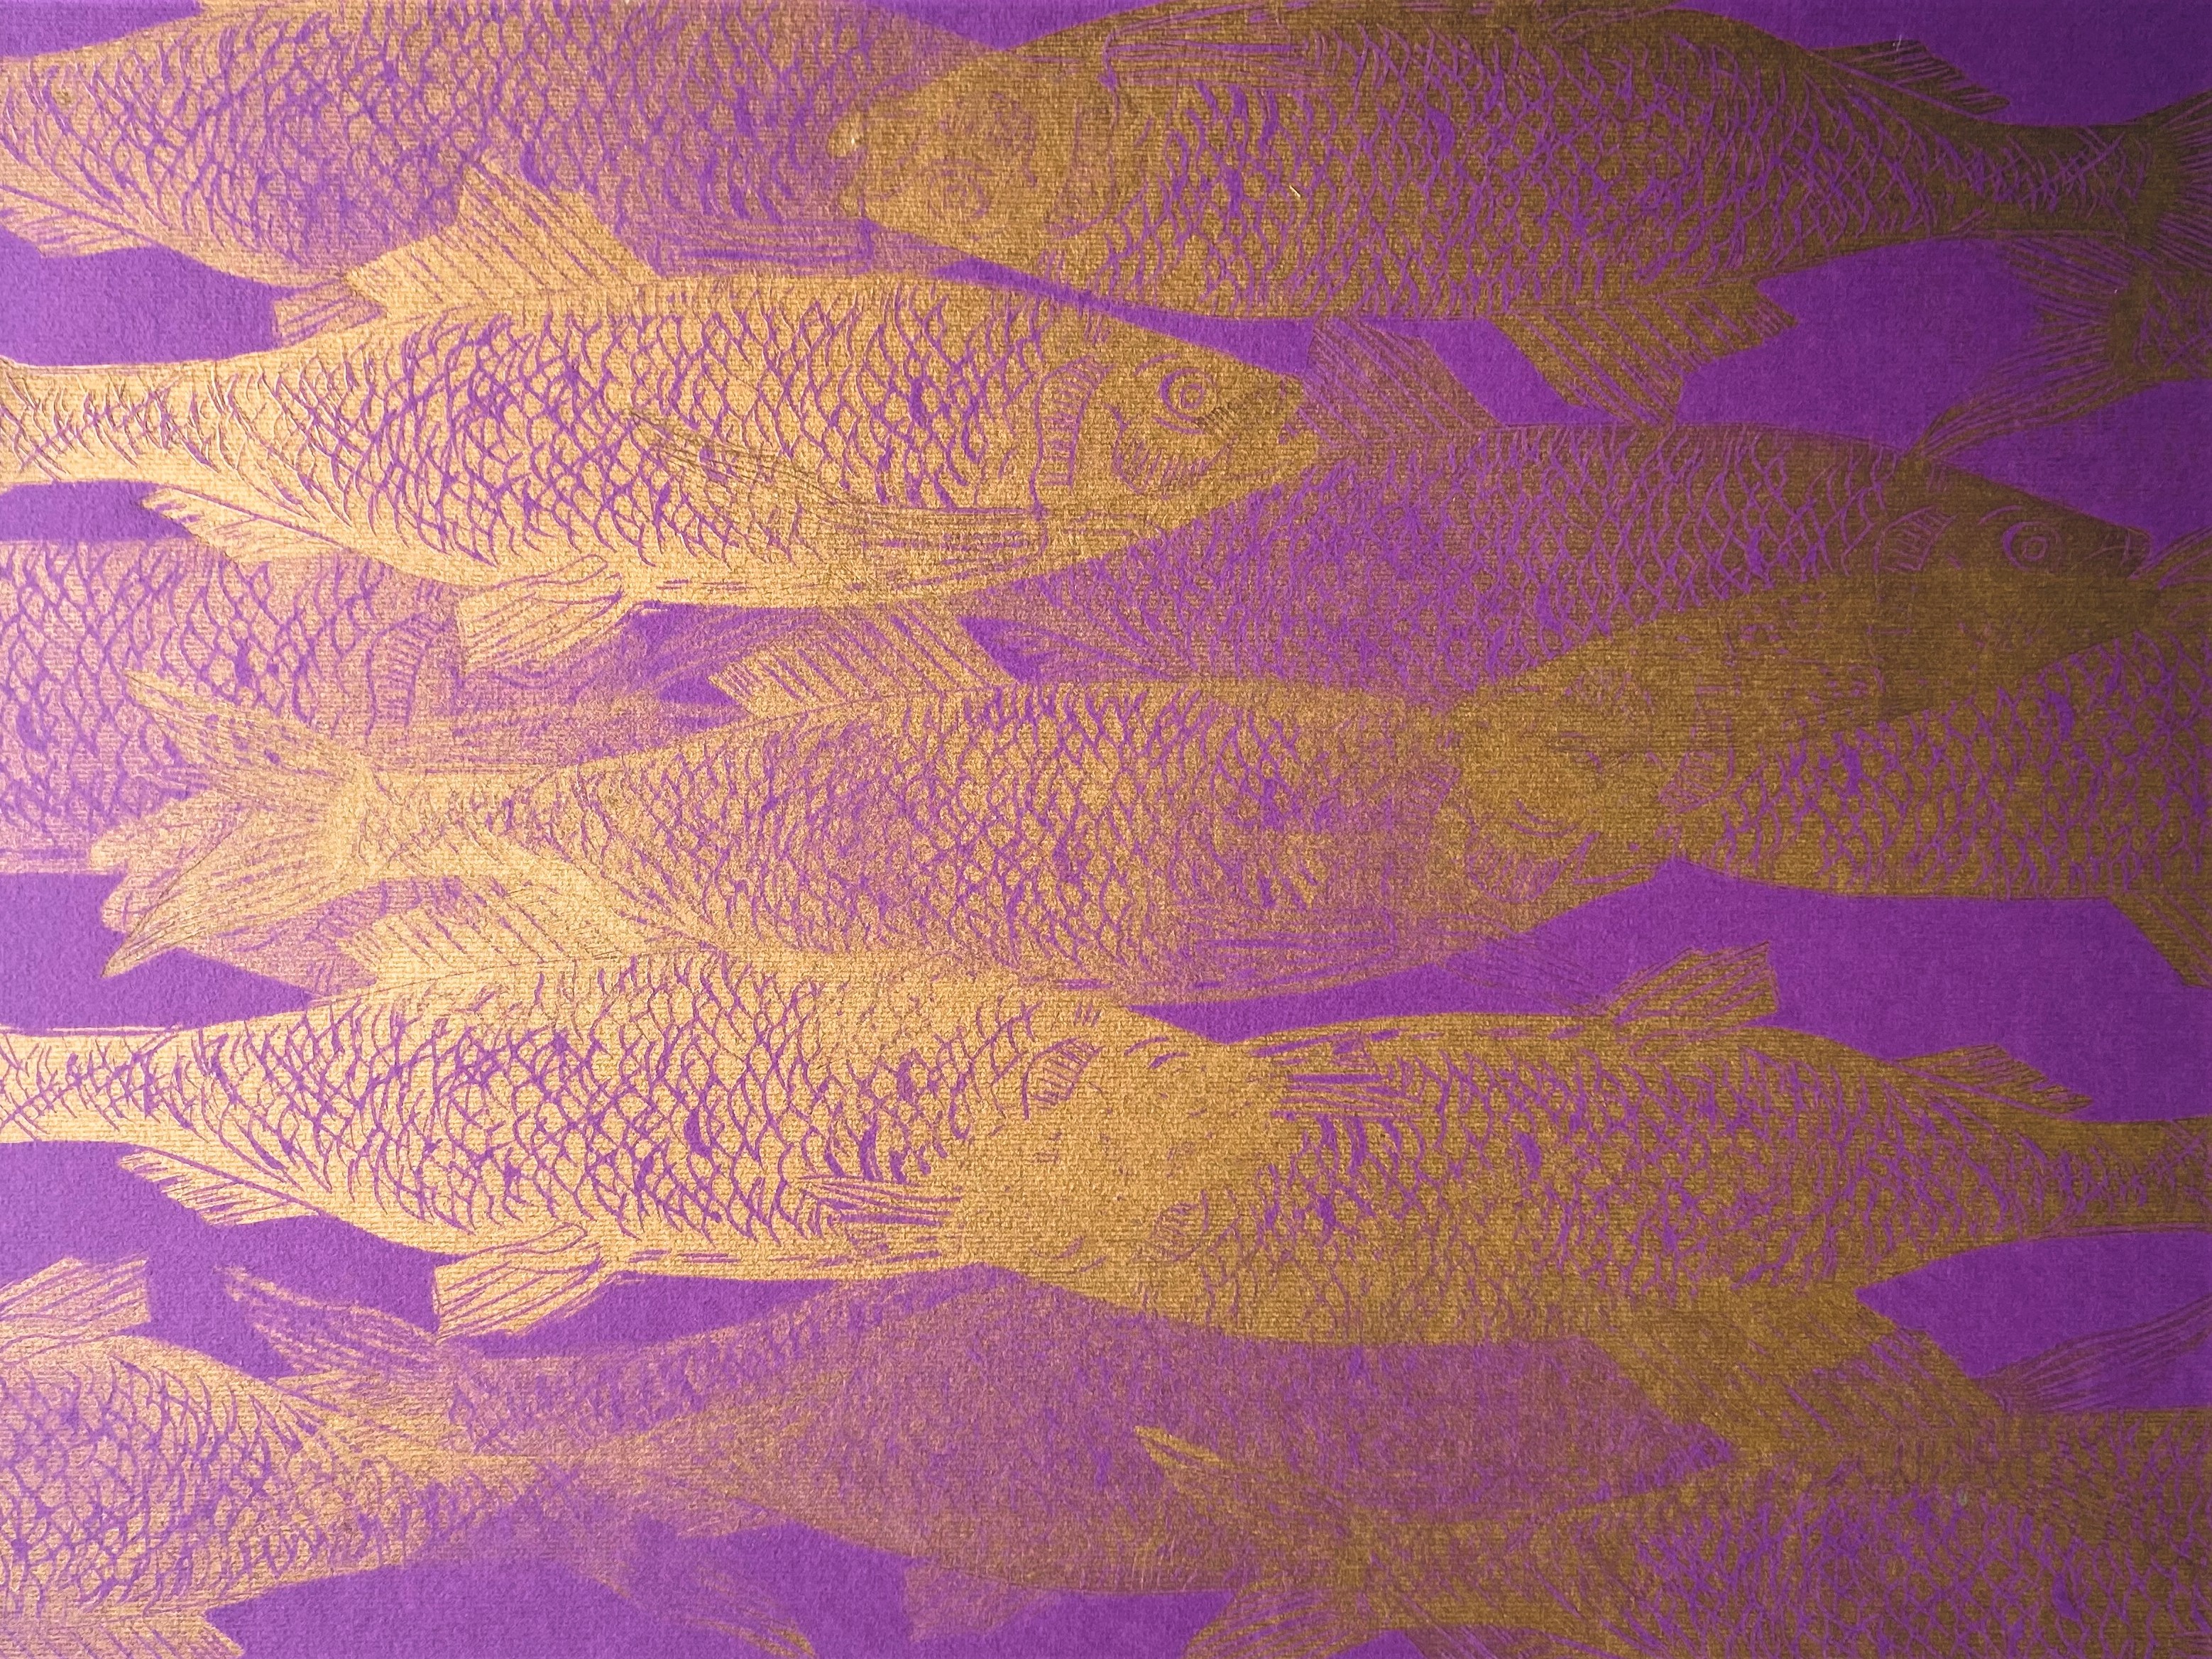 Obraz przedstawia ławicę złotych ryb na fioletowym tle